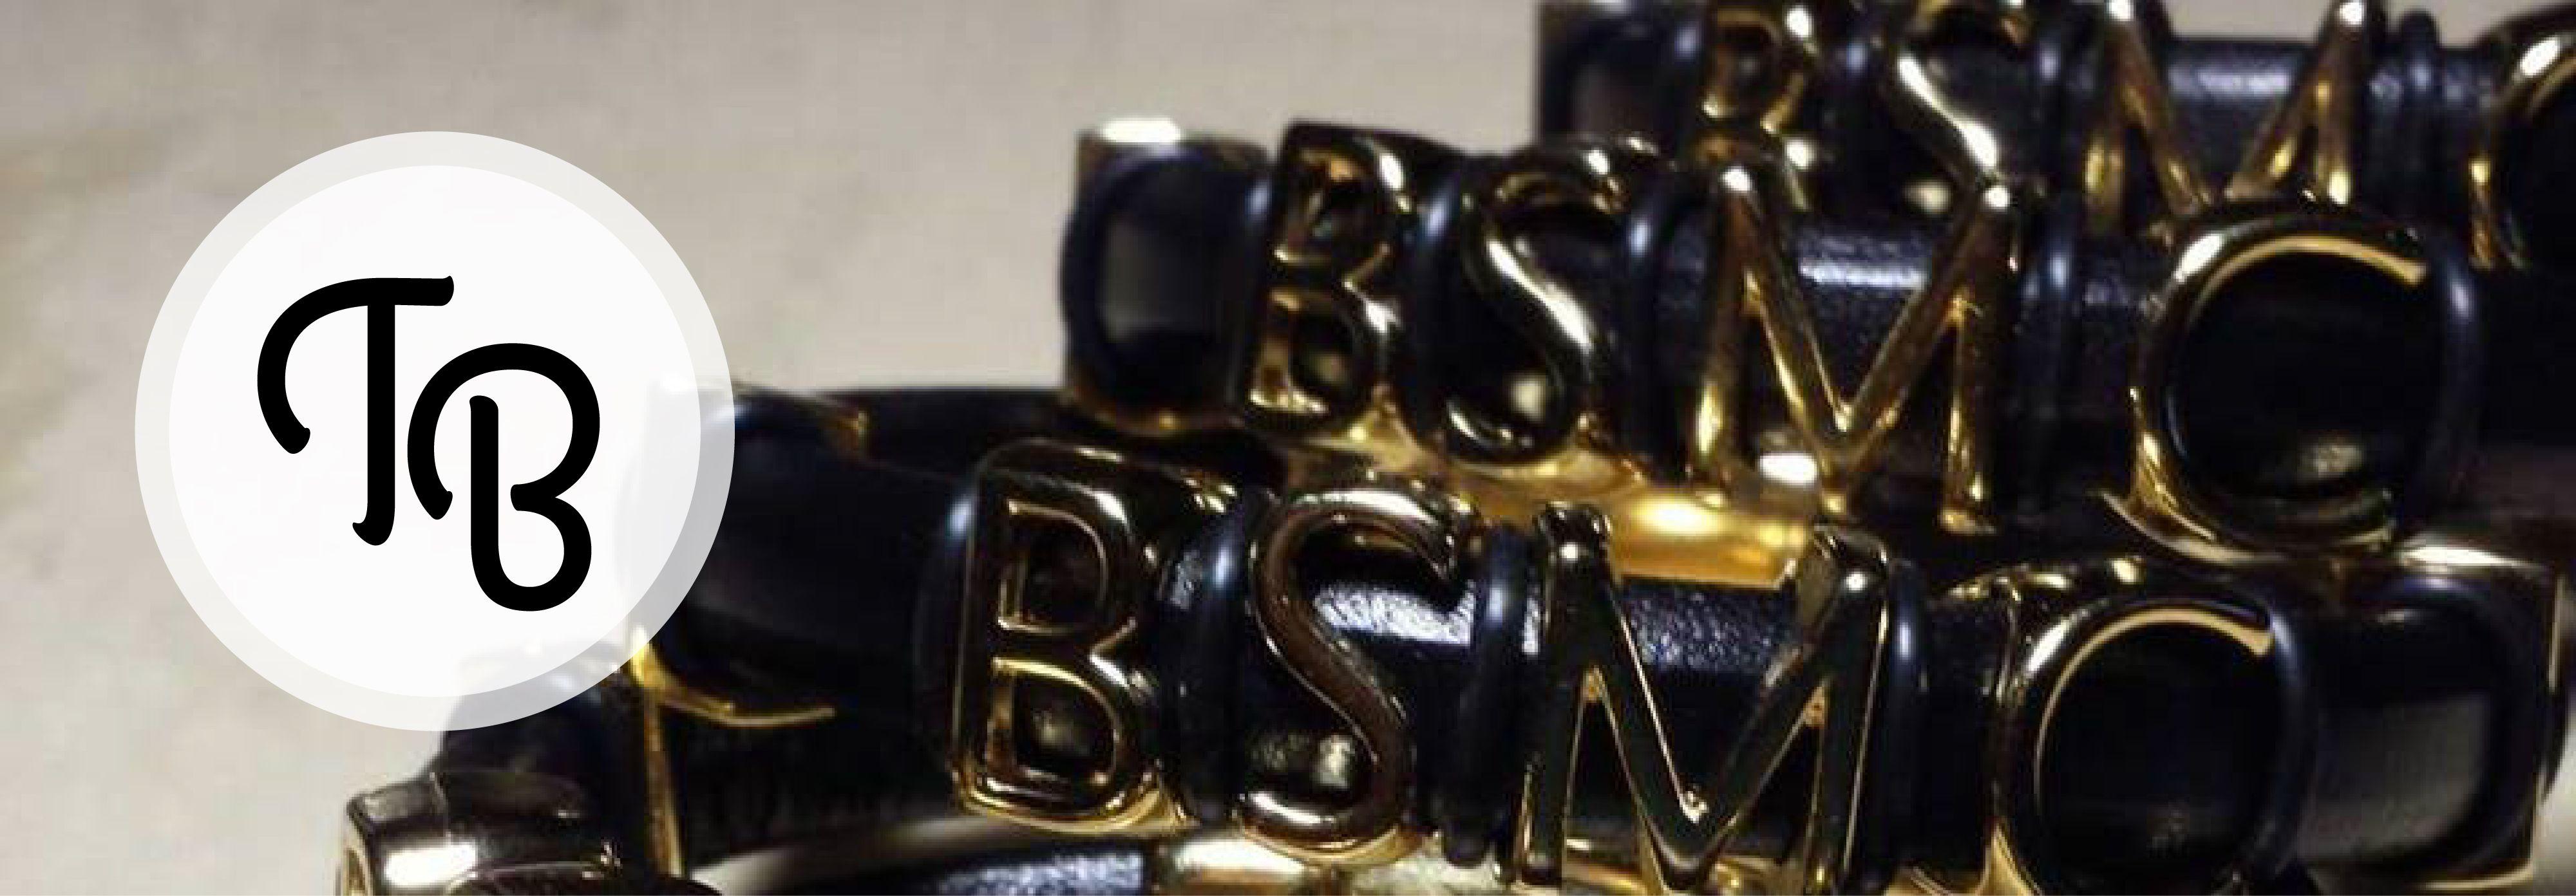 BSMC Logo - BSMC bracelet with logo